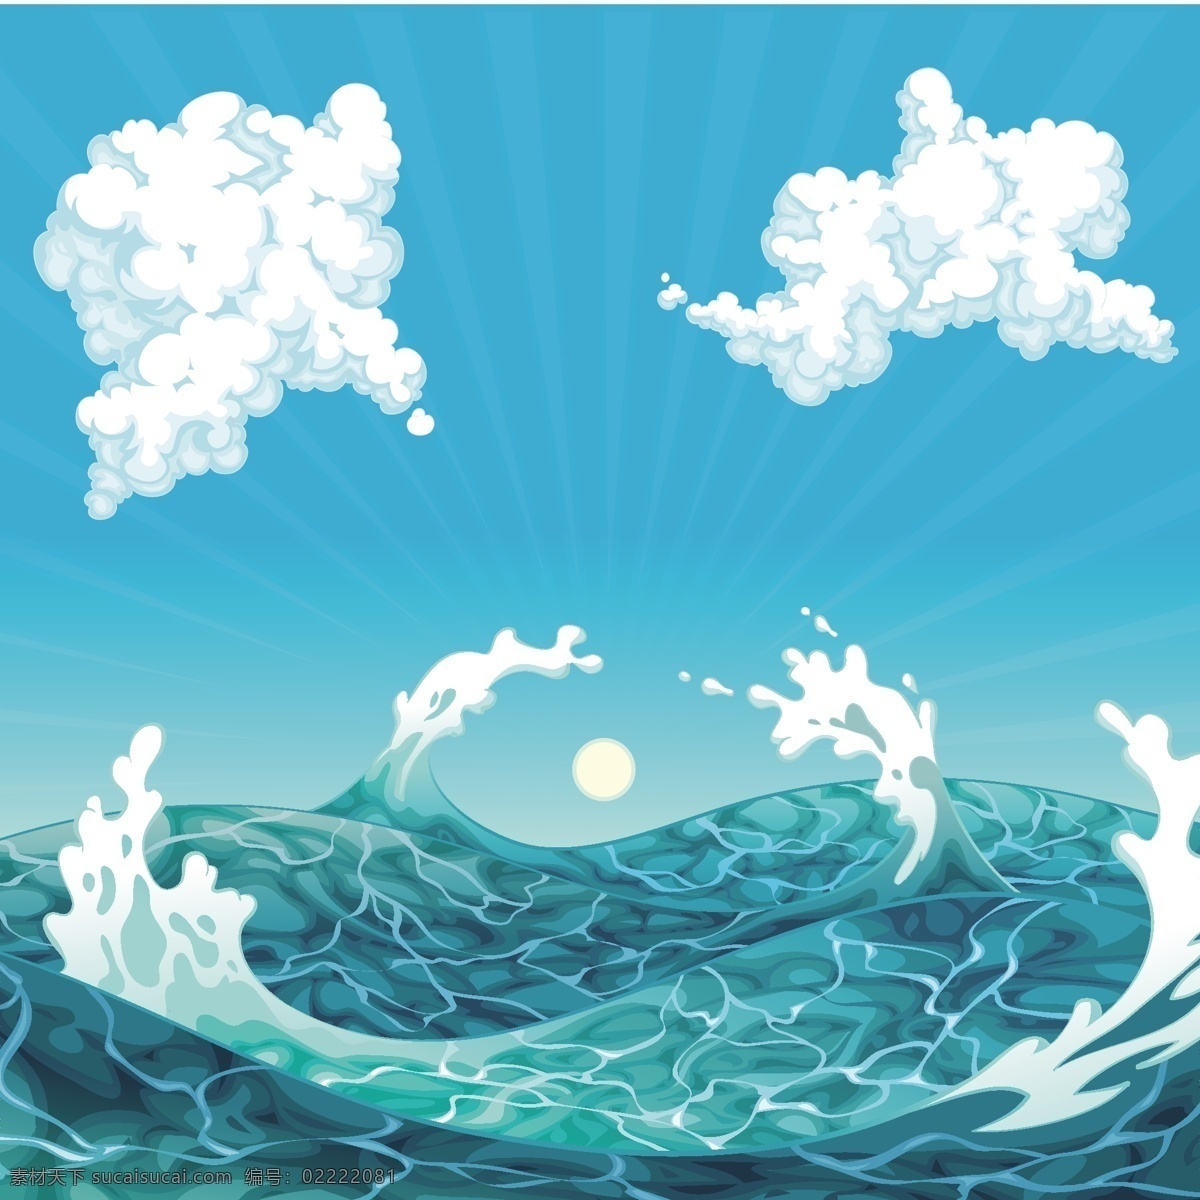 卡通 手绘 海浪 白云 背景 大海 底纹边框 背景底纹 水彩 鱼 水彩绘 海中的鱼